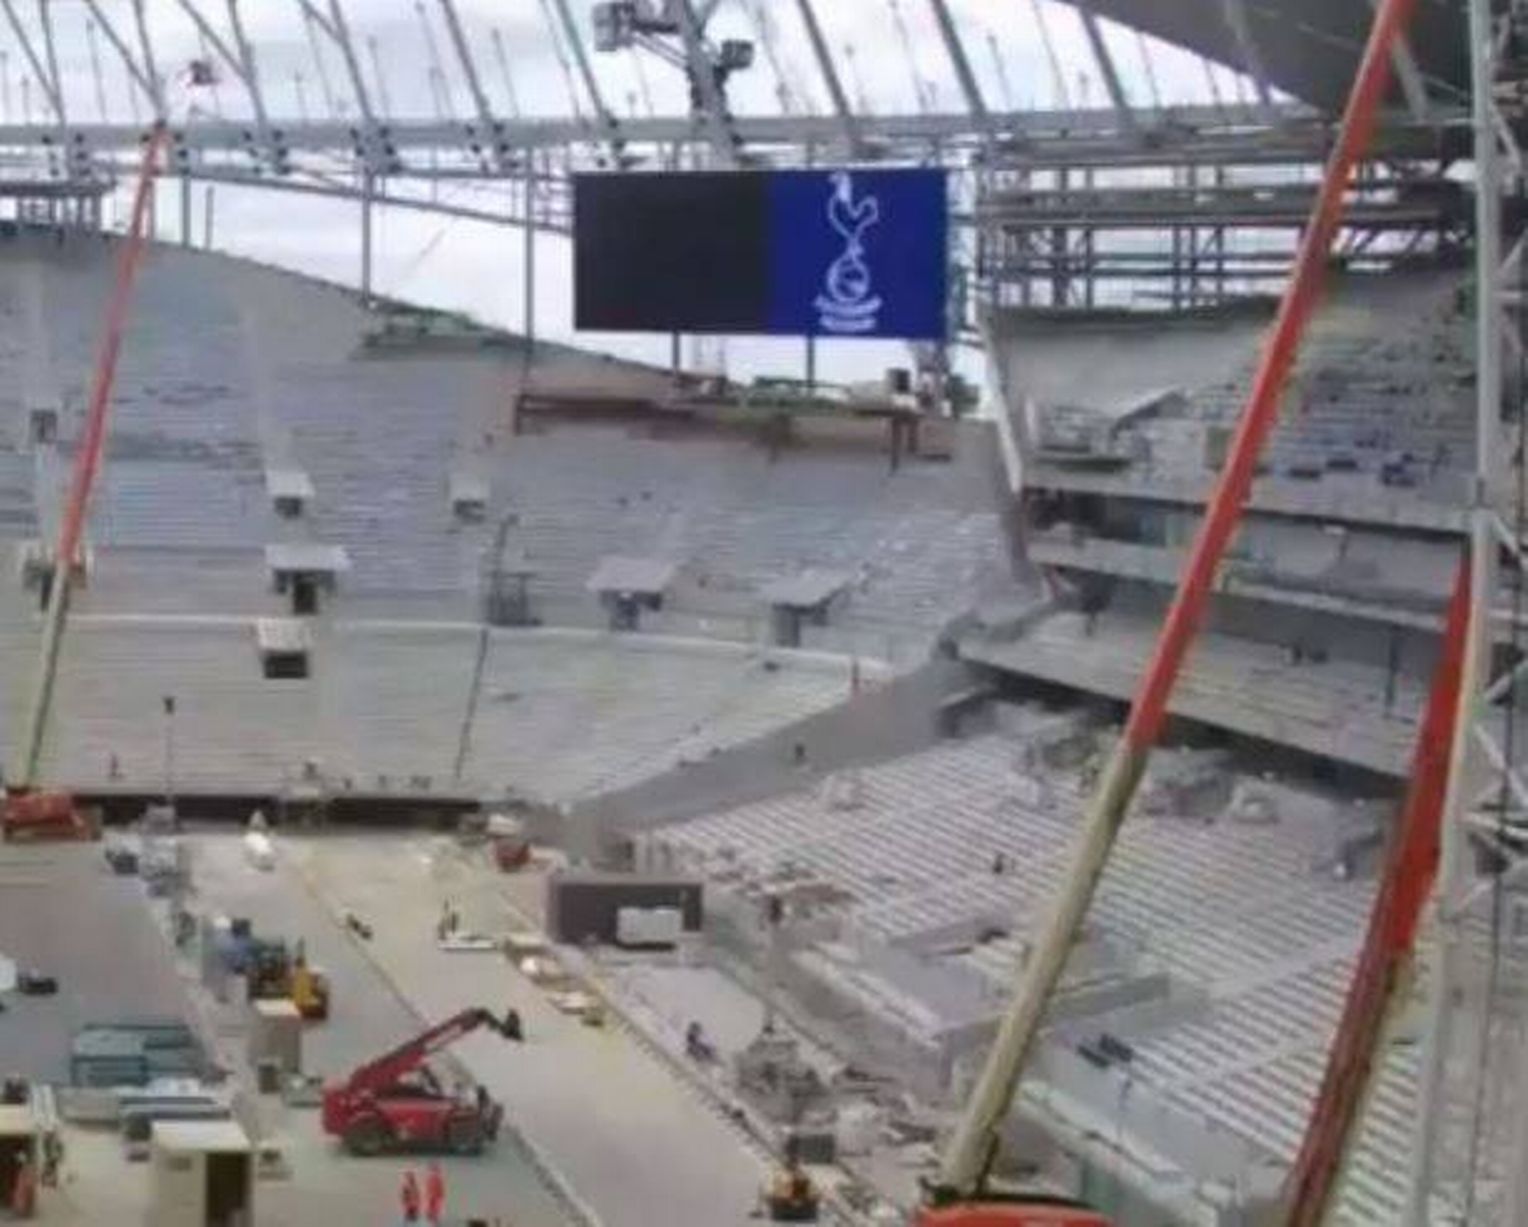 New-Spurs-stadium-LED-screen-test-1.jpg